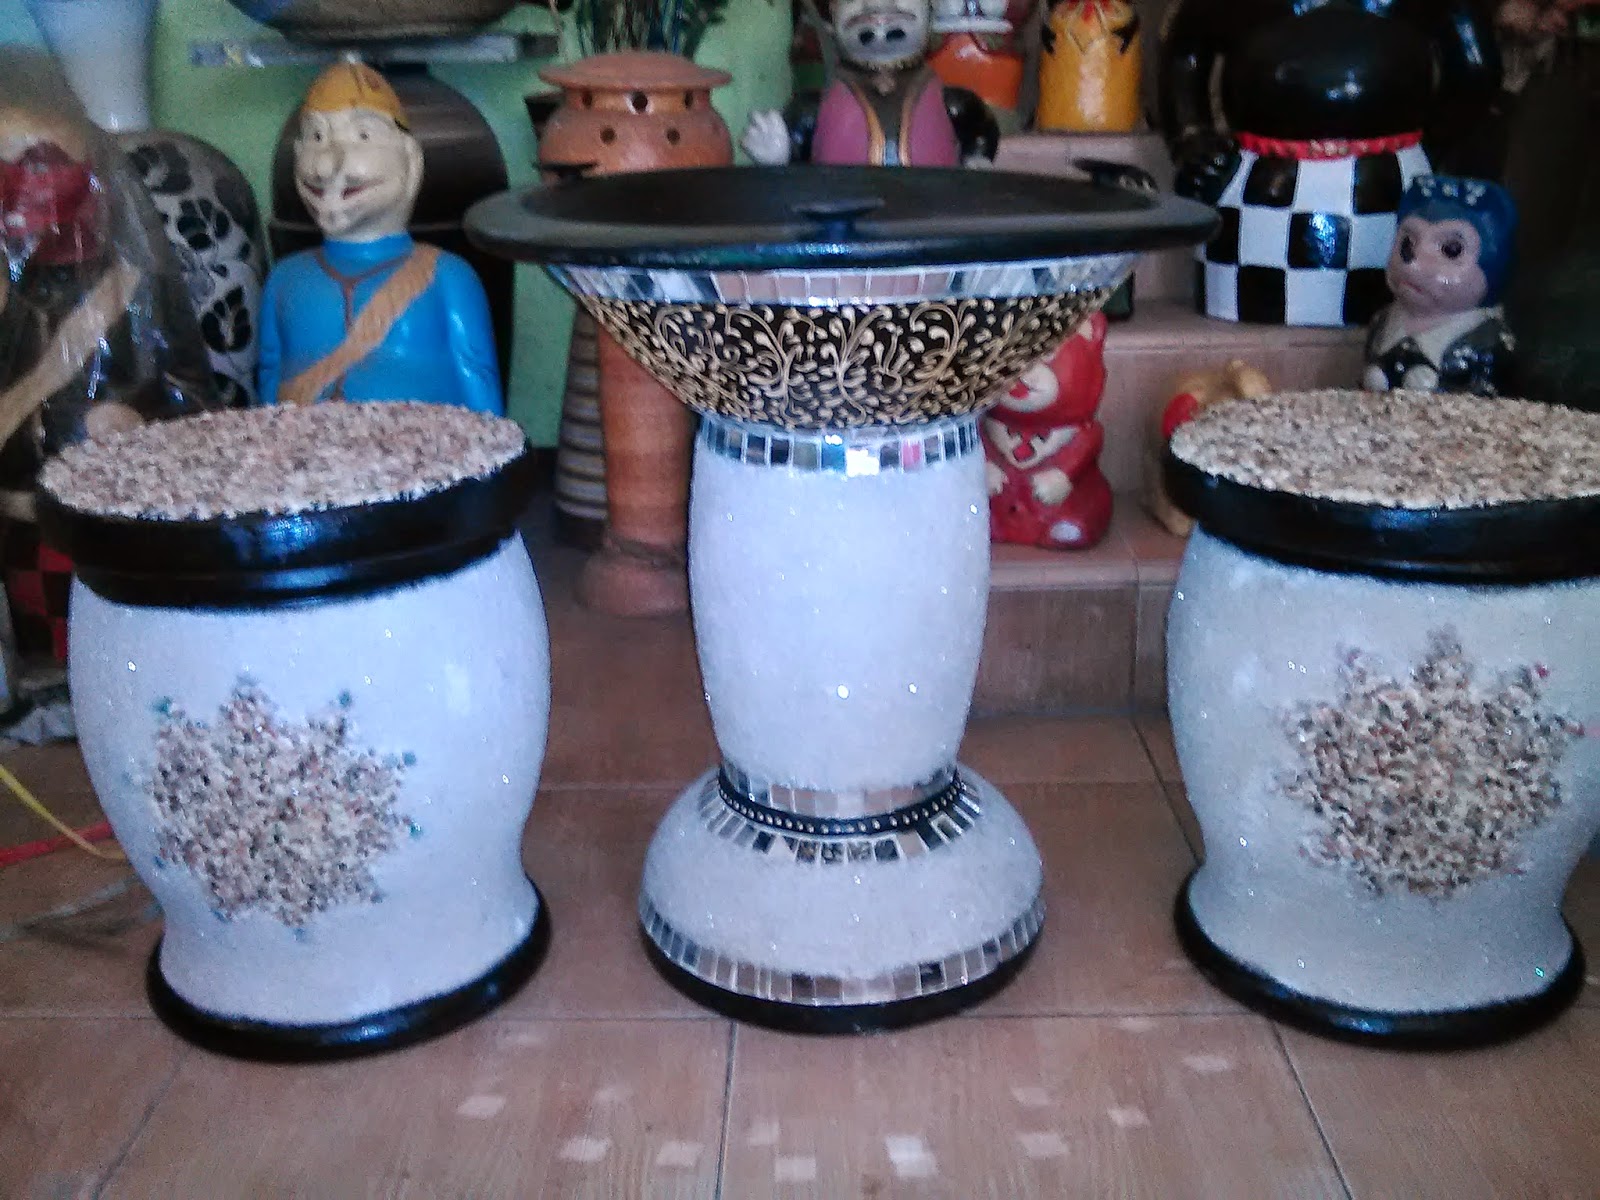 Terjual Jual Produksi Keramik Gerabah Keramik Mulya 